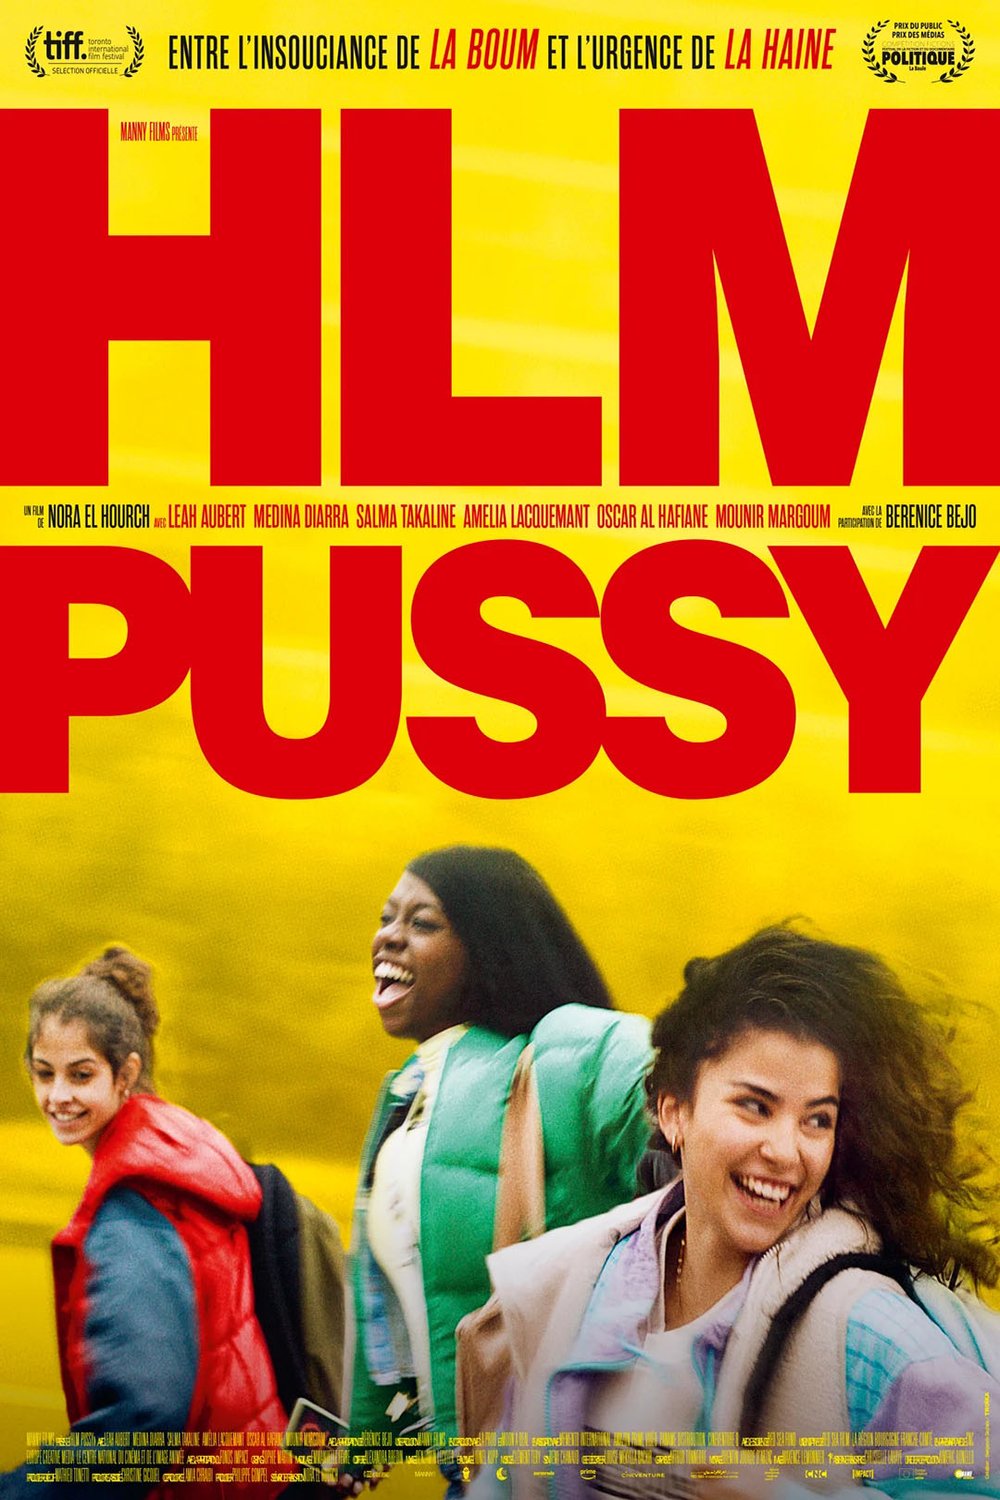 L'affiche du film HLM Pussy